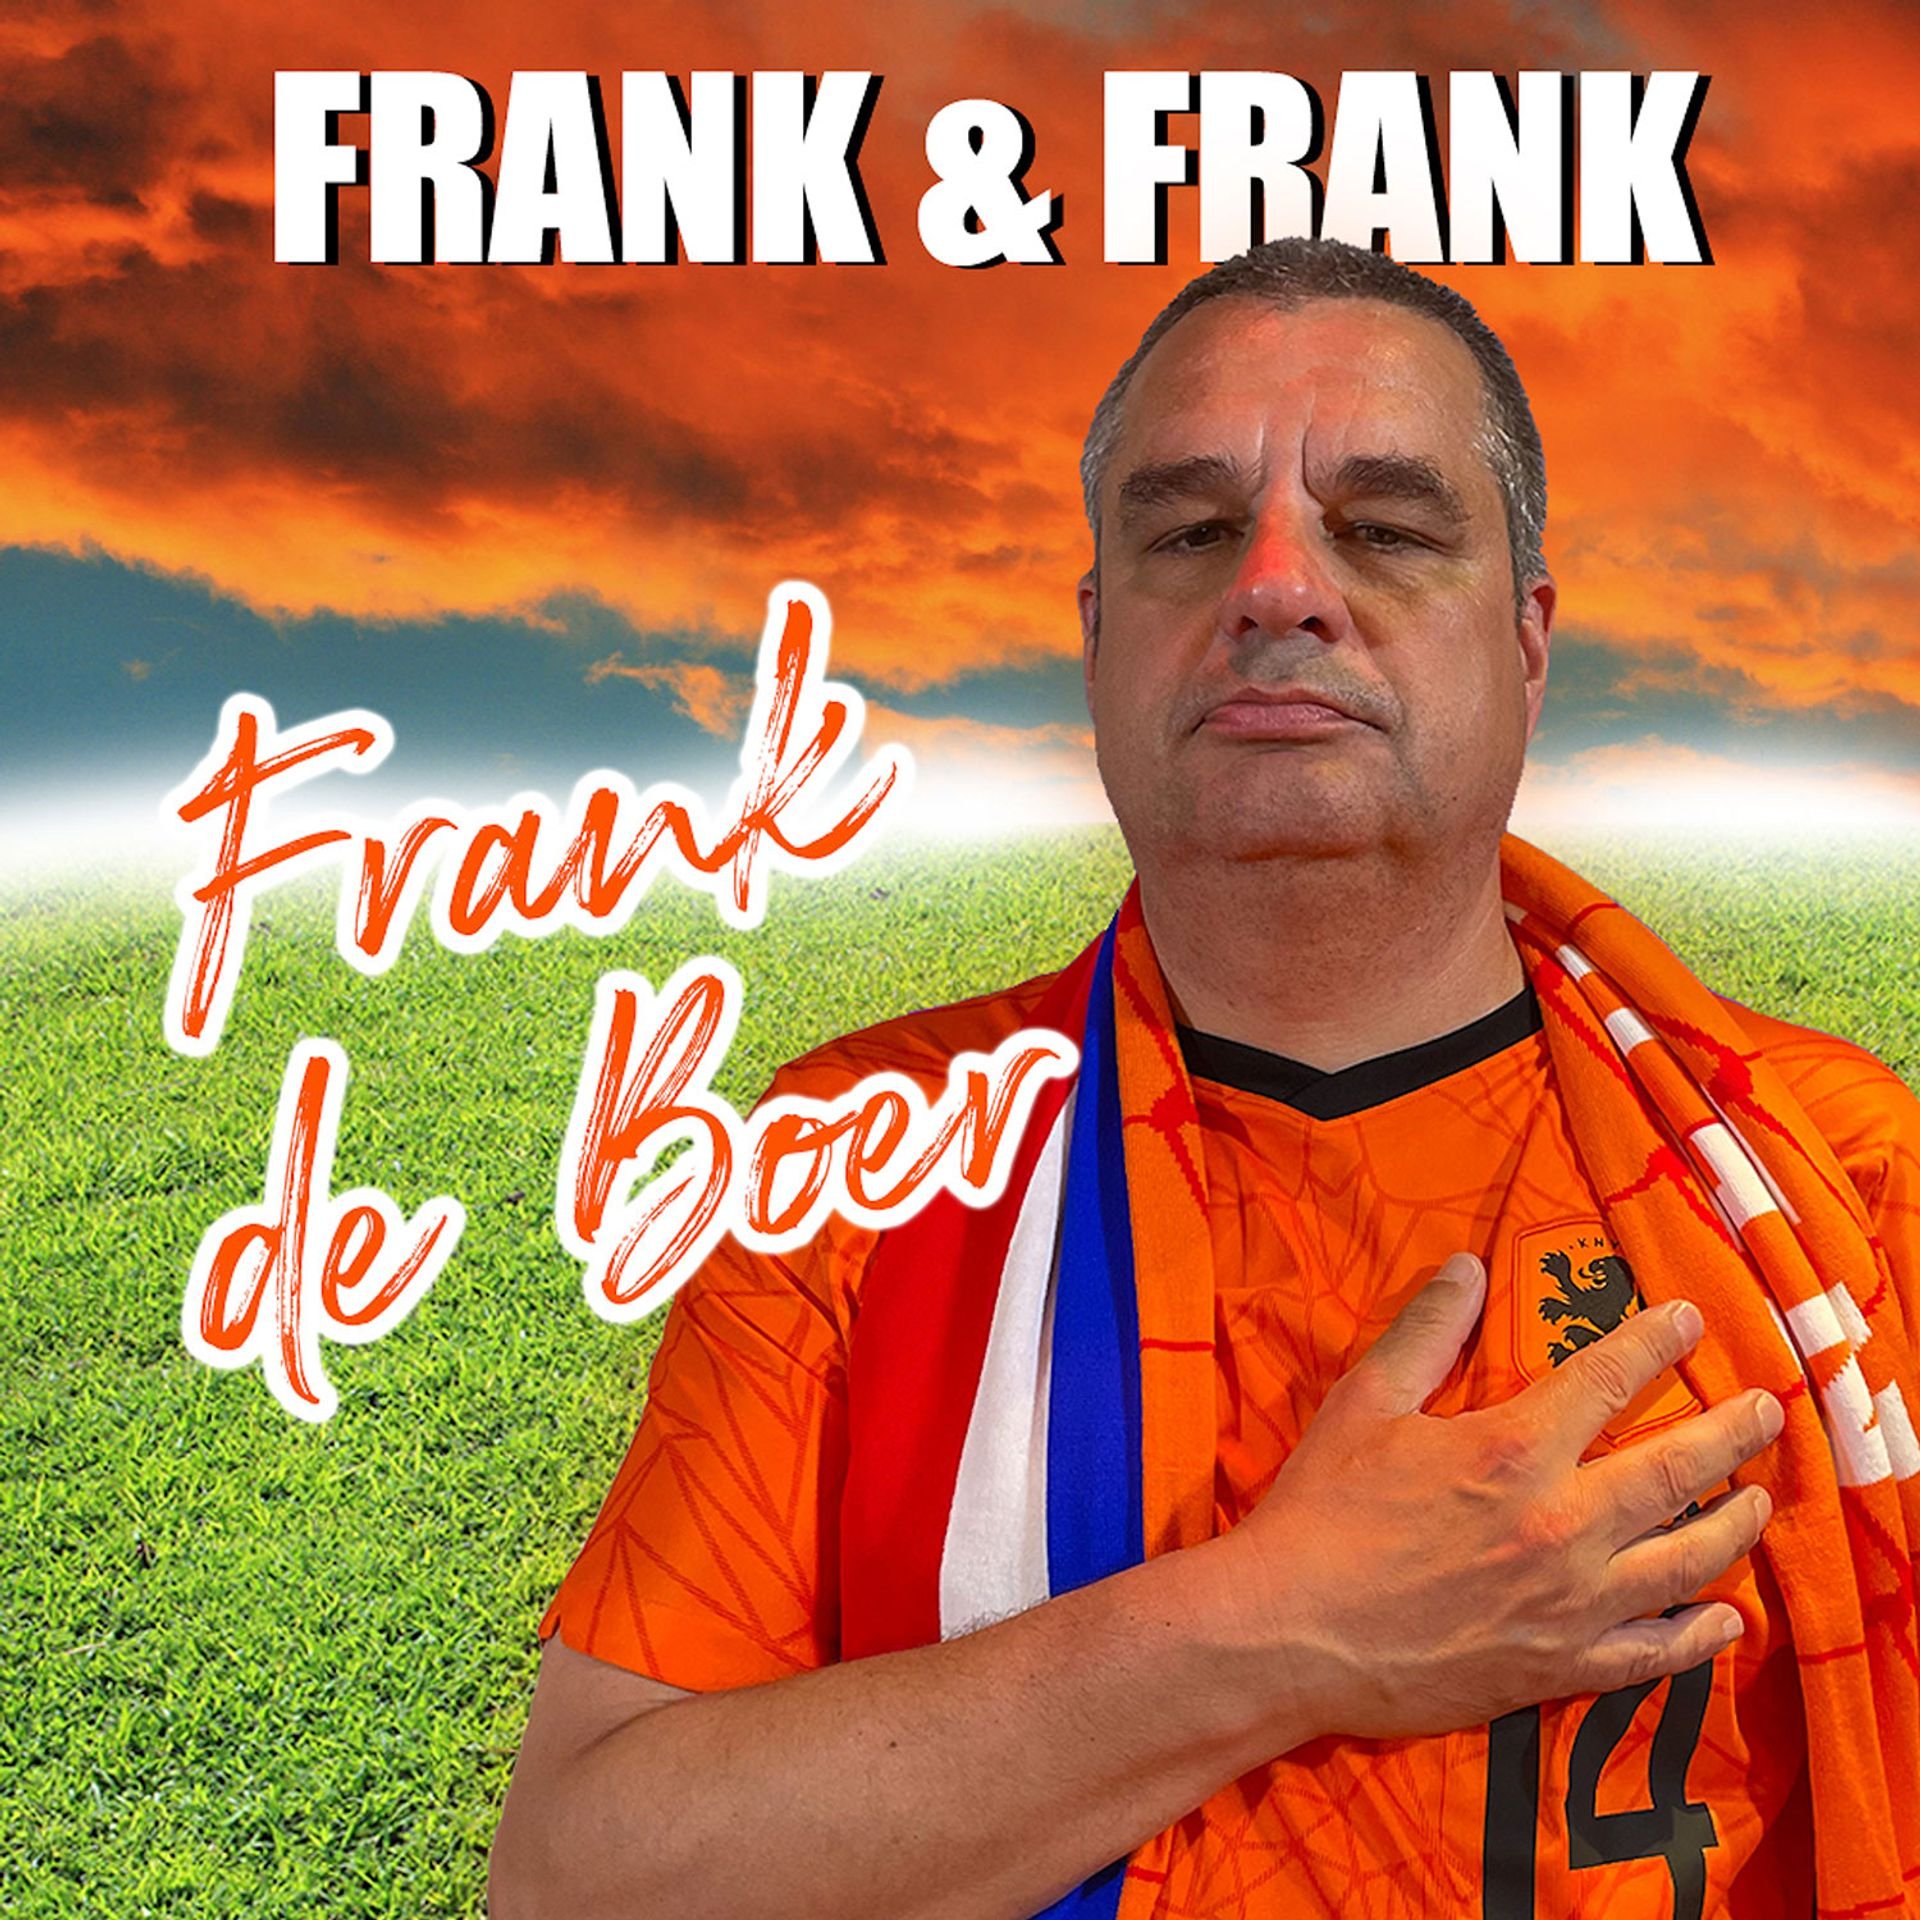 Frank de Boer